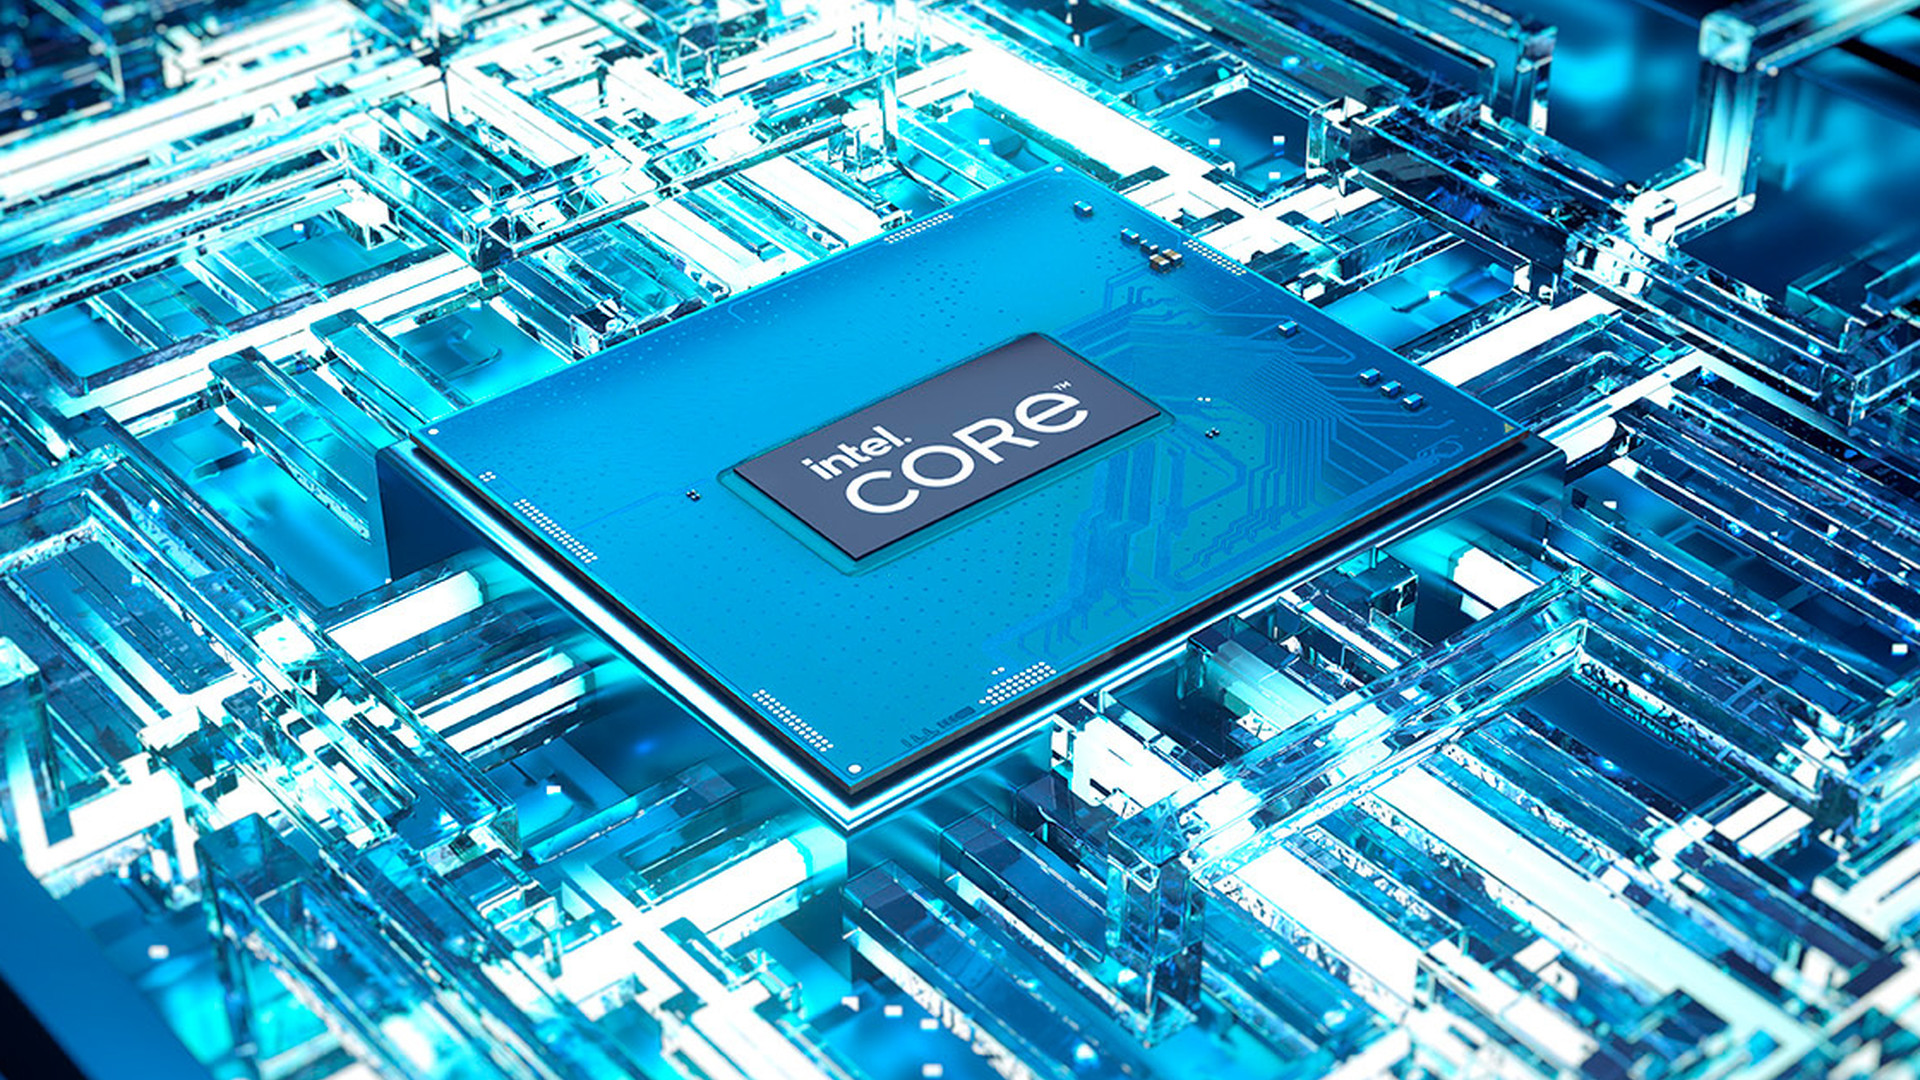 En test single-core, le Core i9-14900K d'Intel ne craint personne... en multi-core c'est autre chose